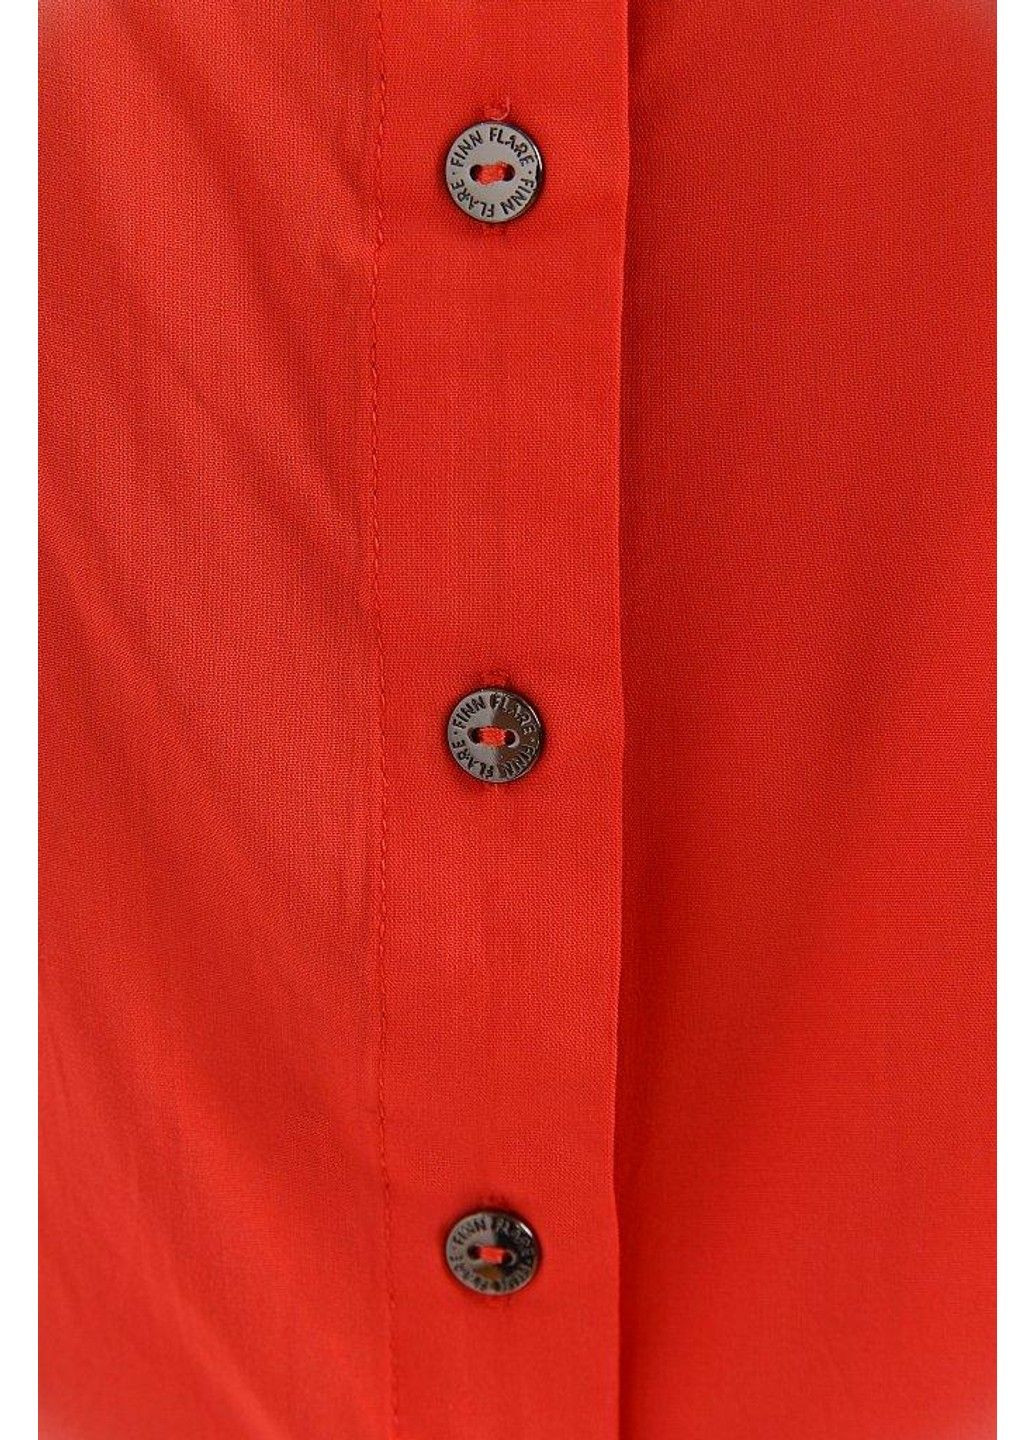 Красная летняя блузка s19-32071-326 Finn Flare